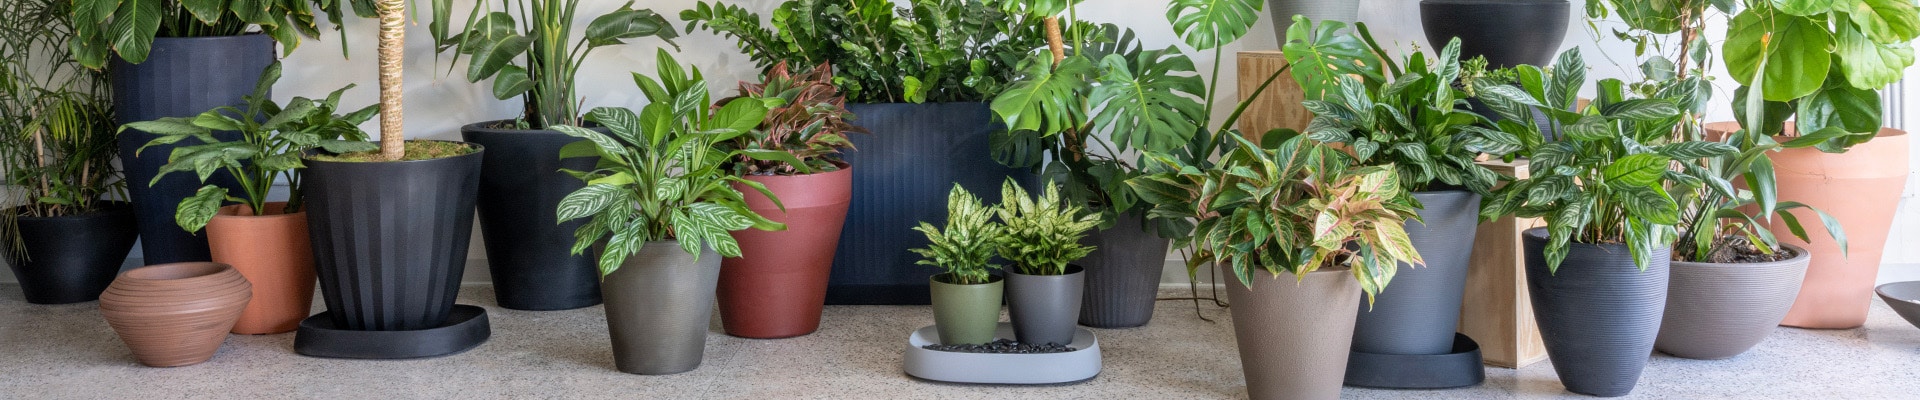 Premium indoor and outdoor planters